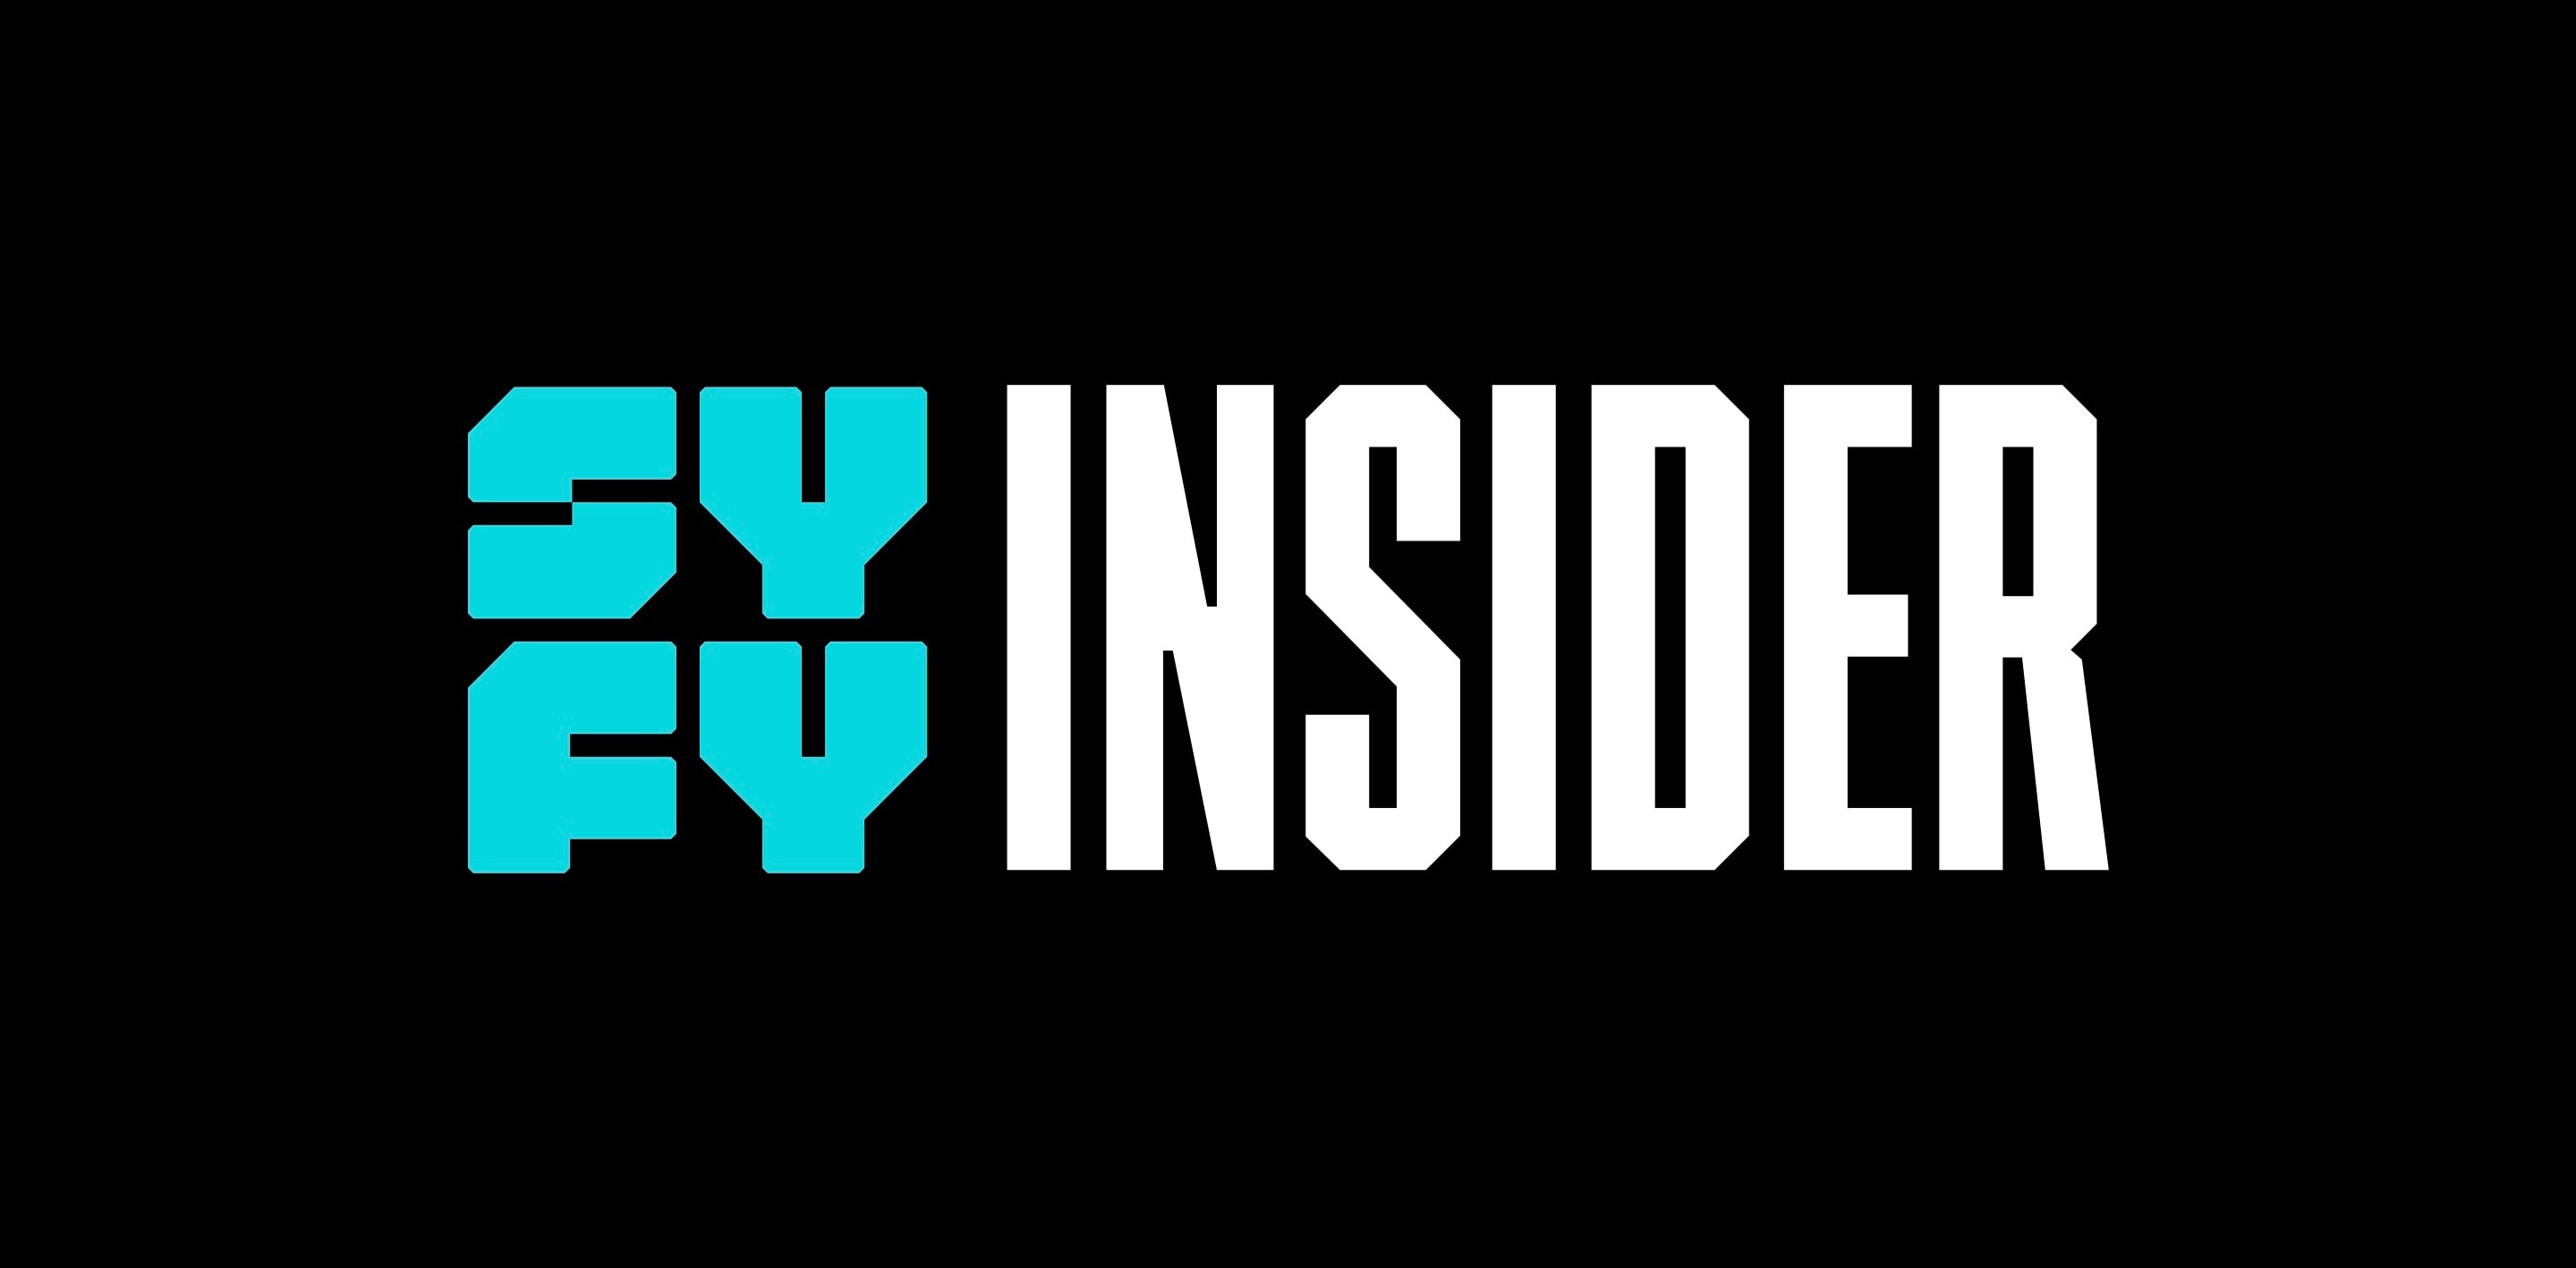 Syfy Insider Logo